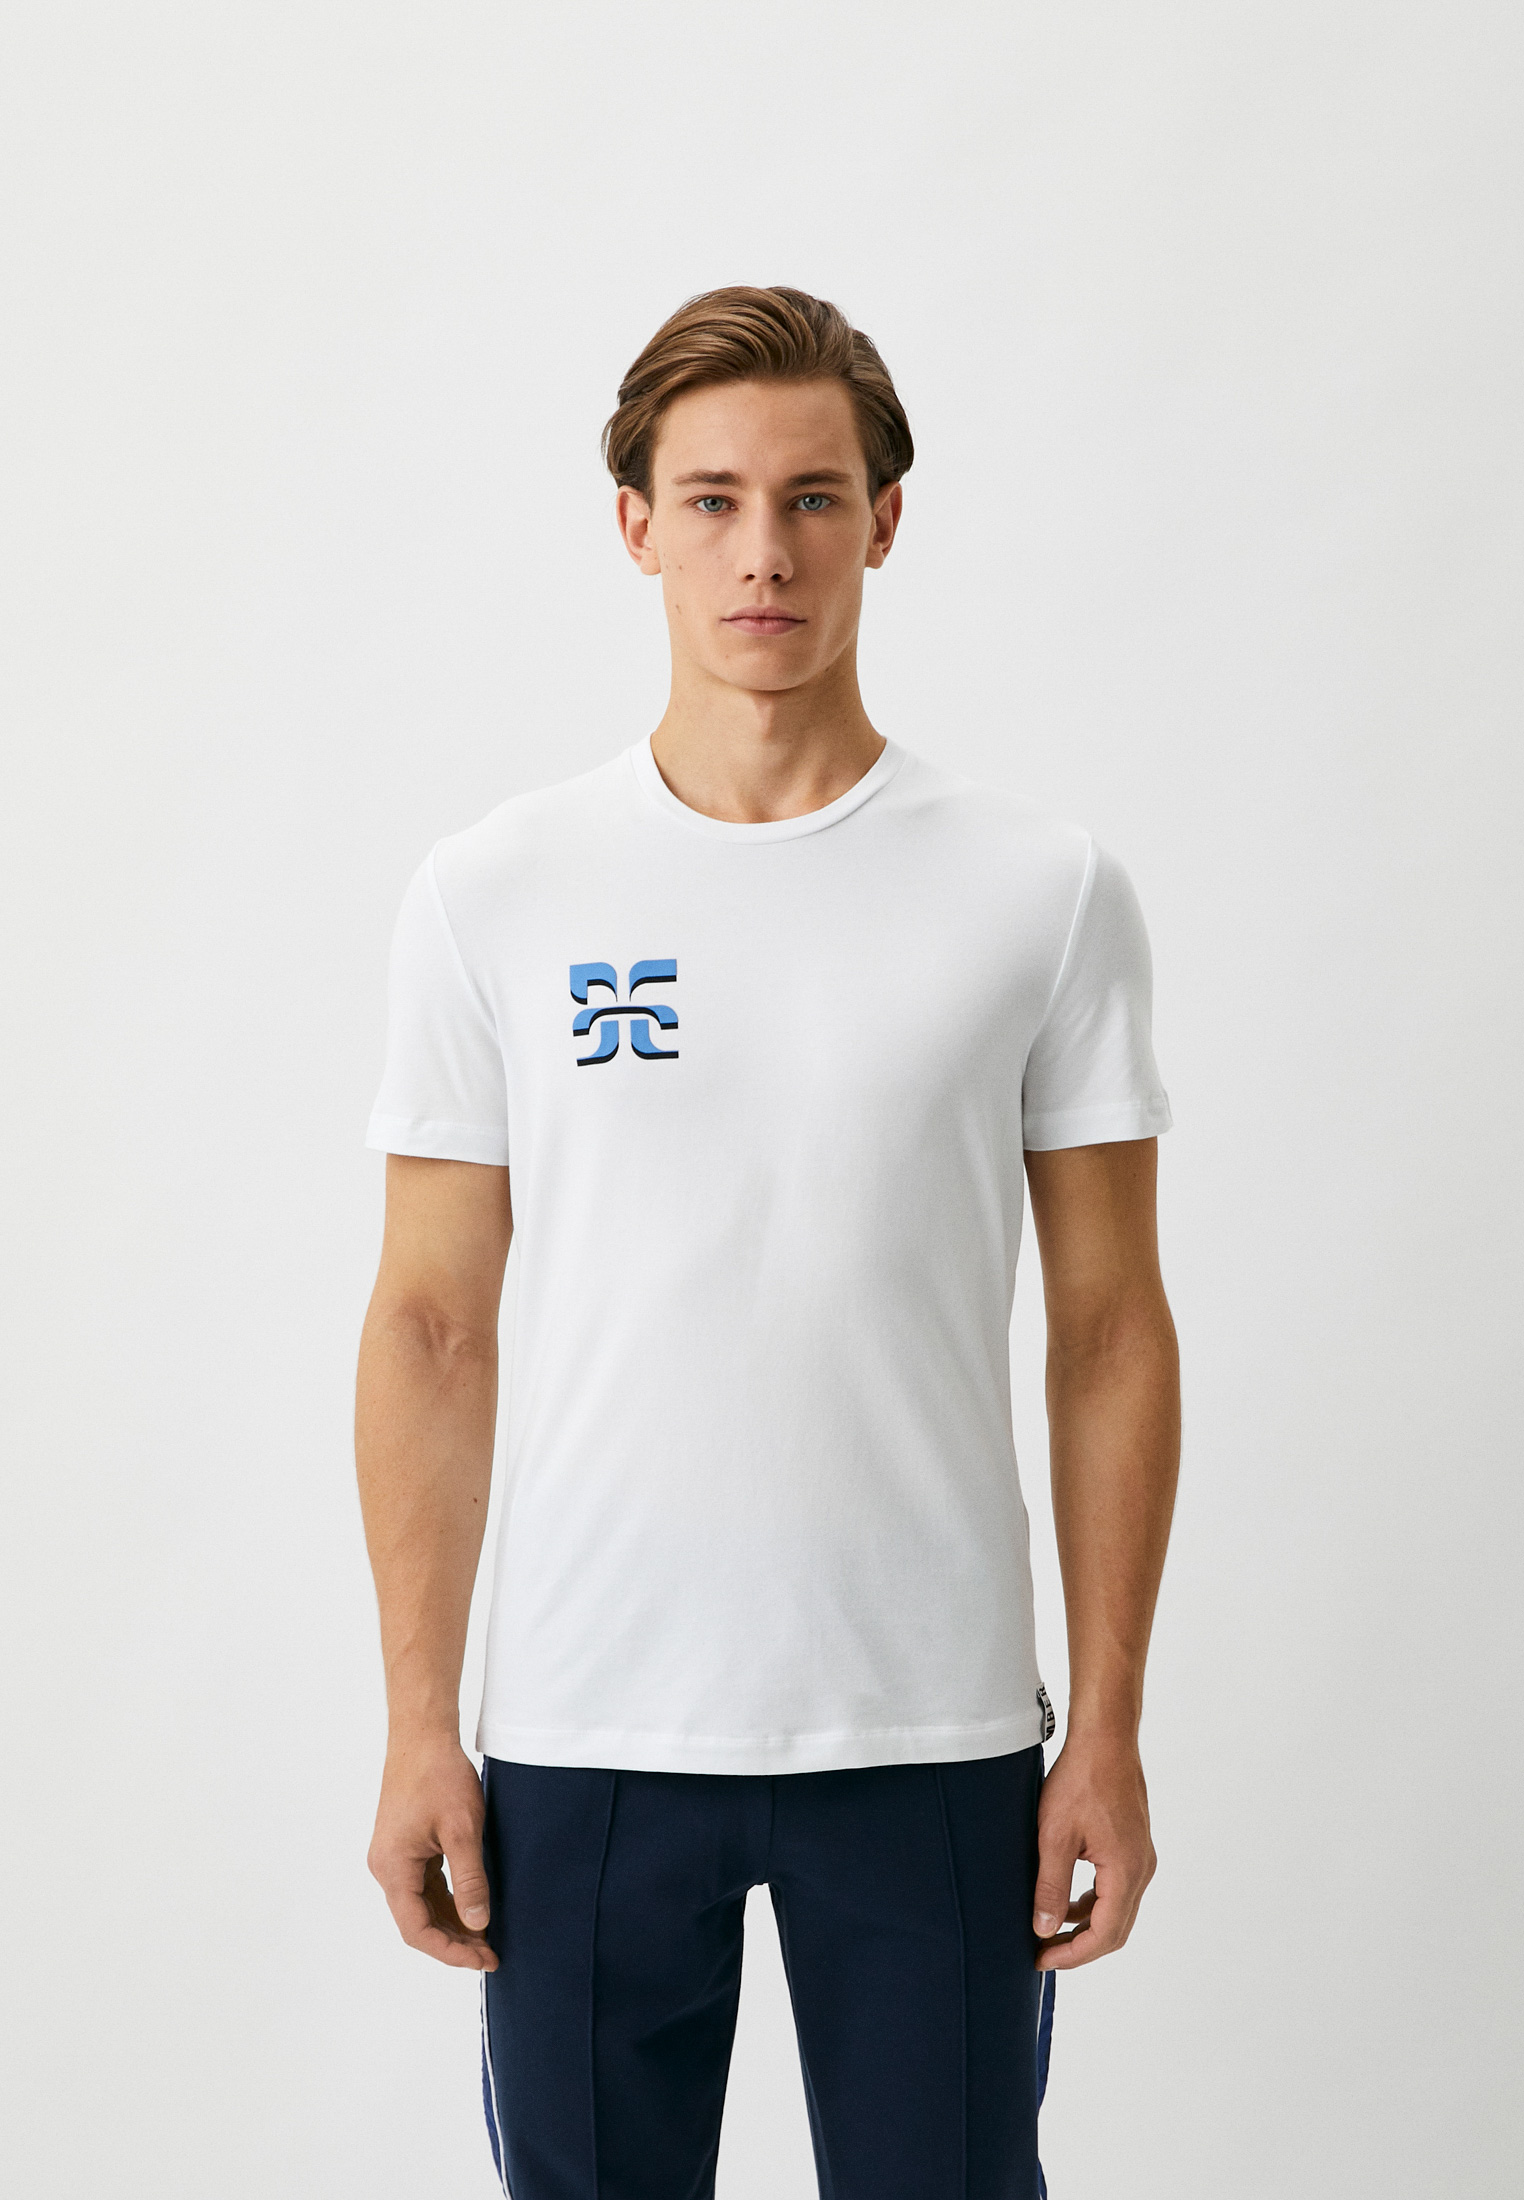 Мужская футболка Bikkembergs (Биккембергс) C 4 101 1T E 2286